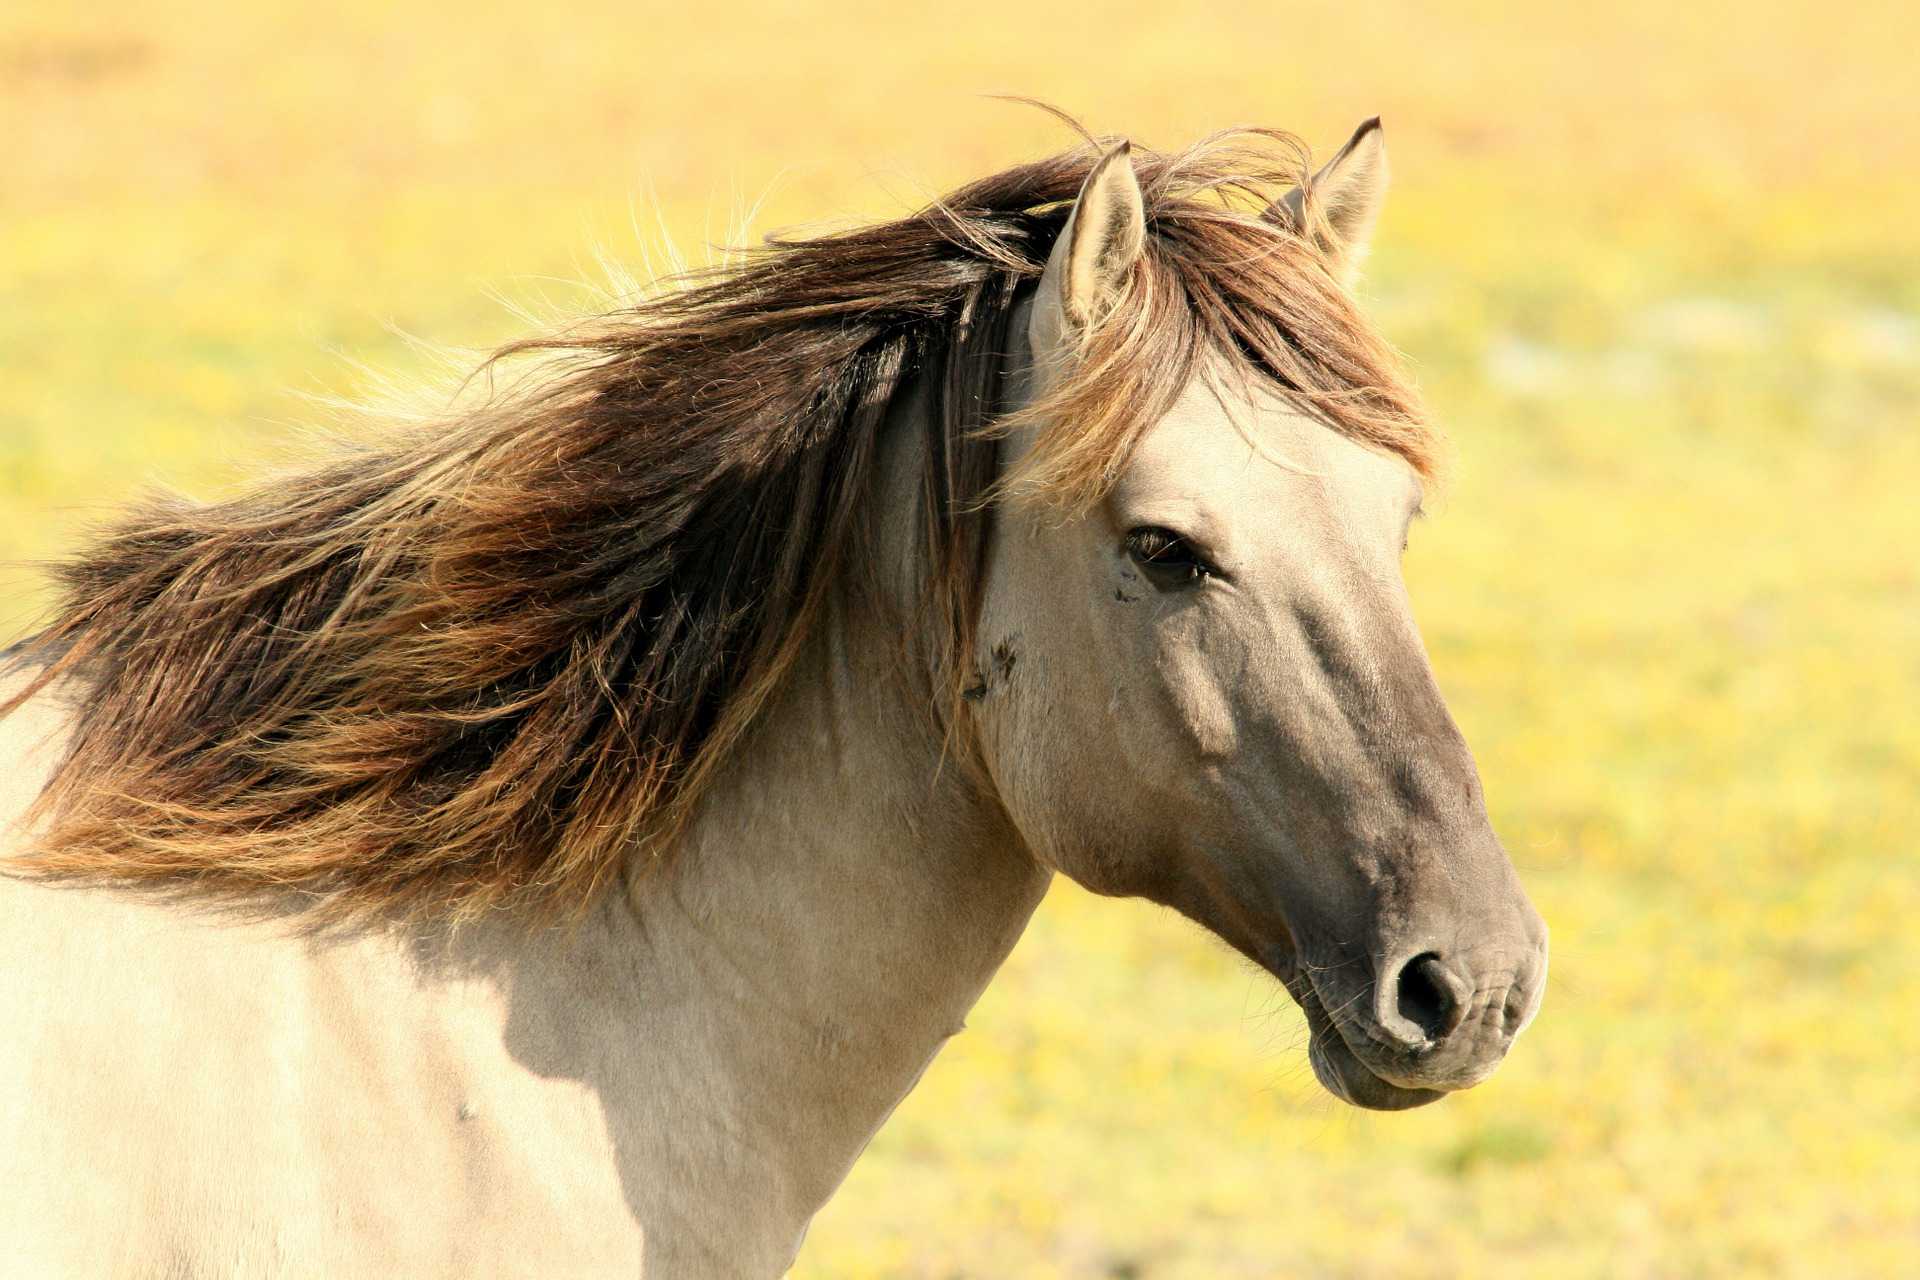 Pferd auf der Wiese. Foto: Wim De graaf (Pixabay)